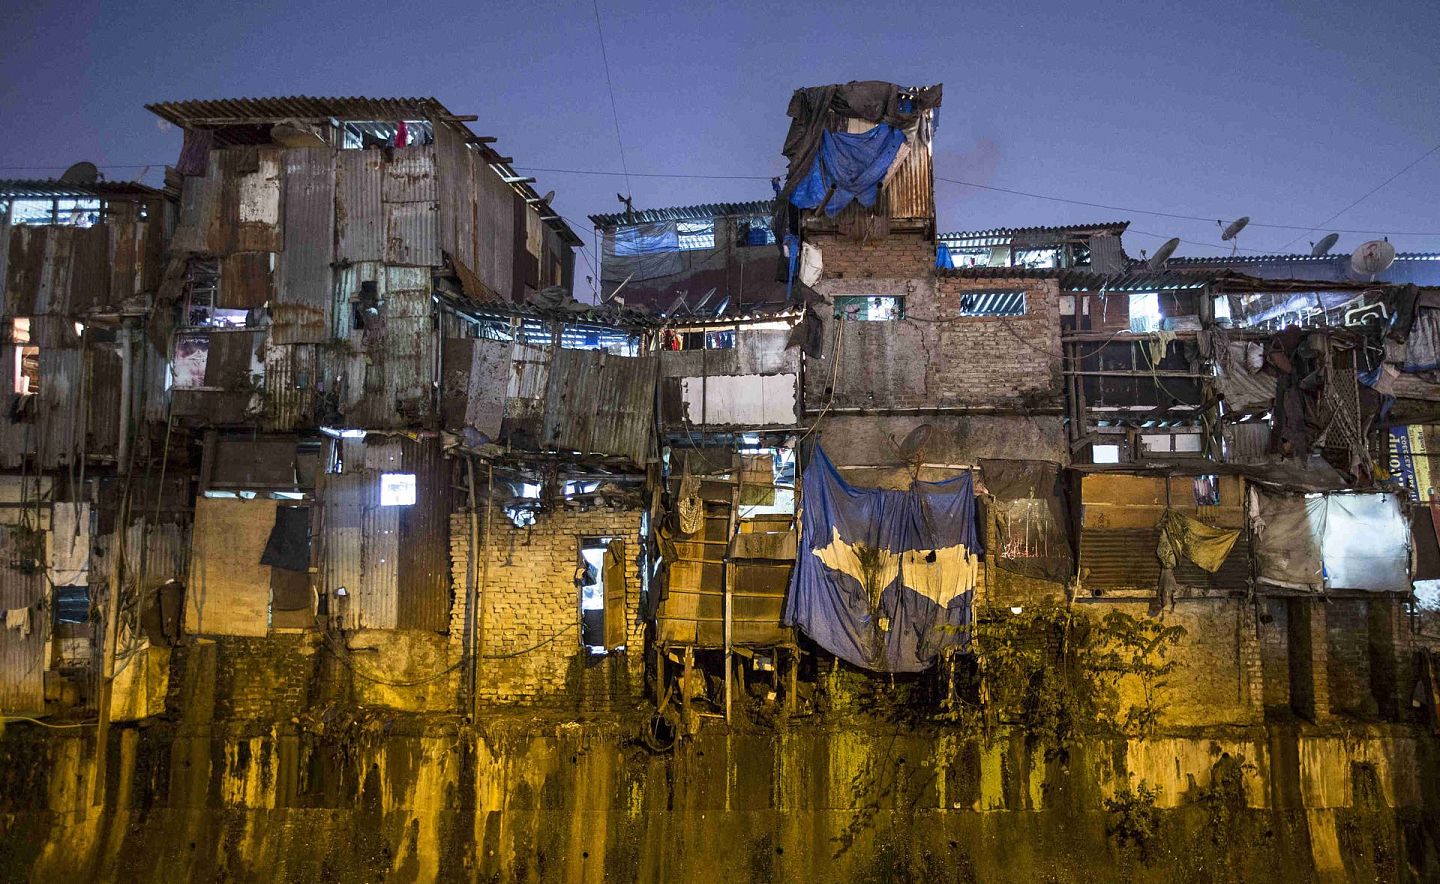 类似的血汗工厂也隐藏在印度的贫民窟中。 （路透社）